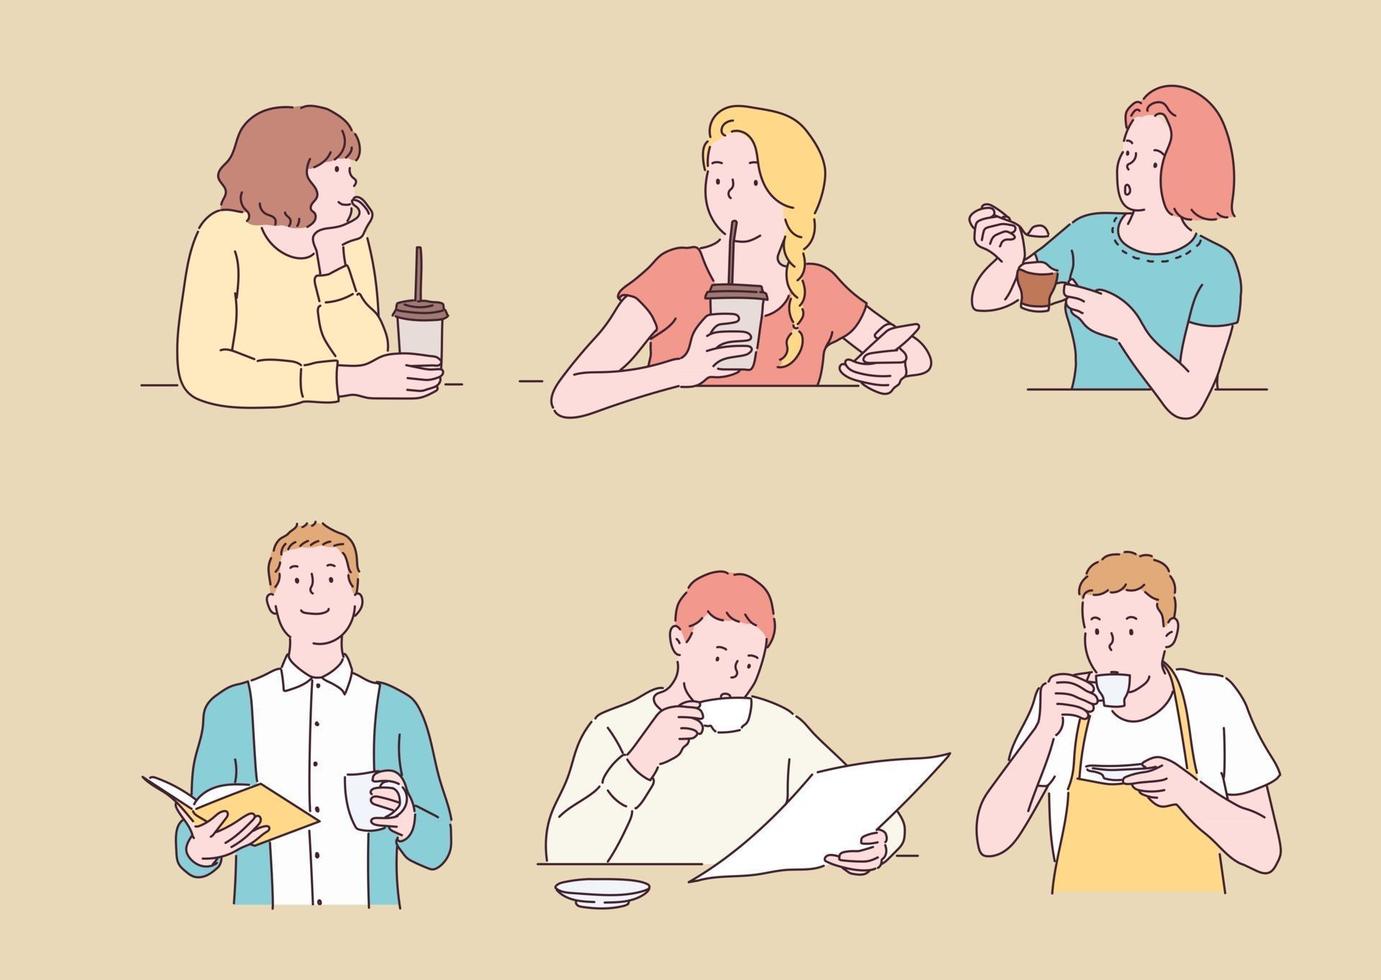 samling av människor som dricker kaffe. handritade illustrationer för stilvektordesign. vektor